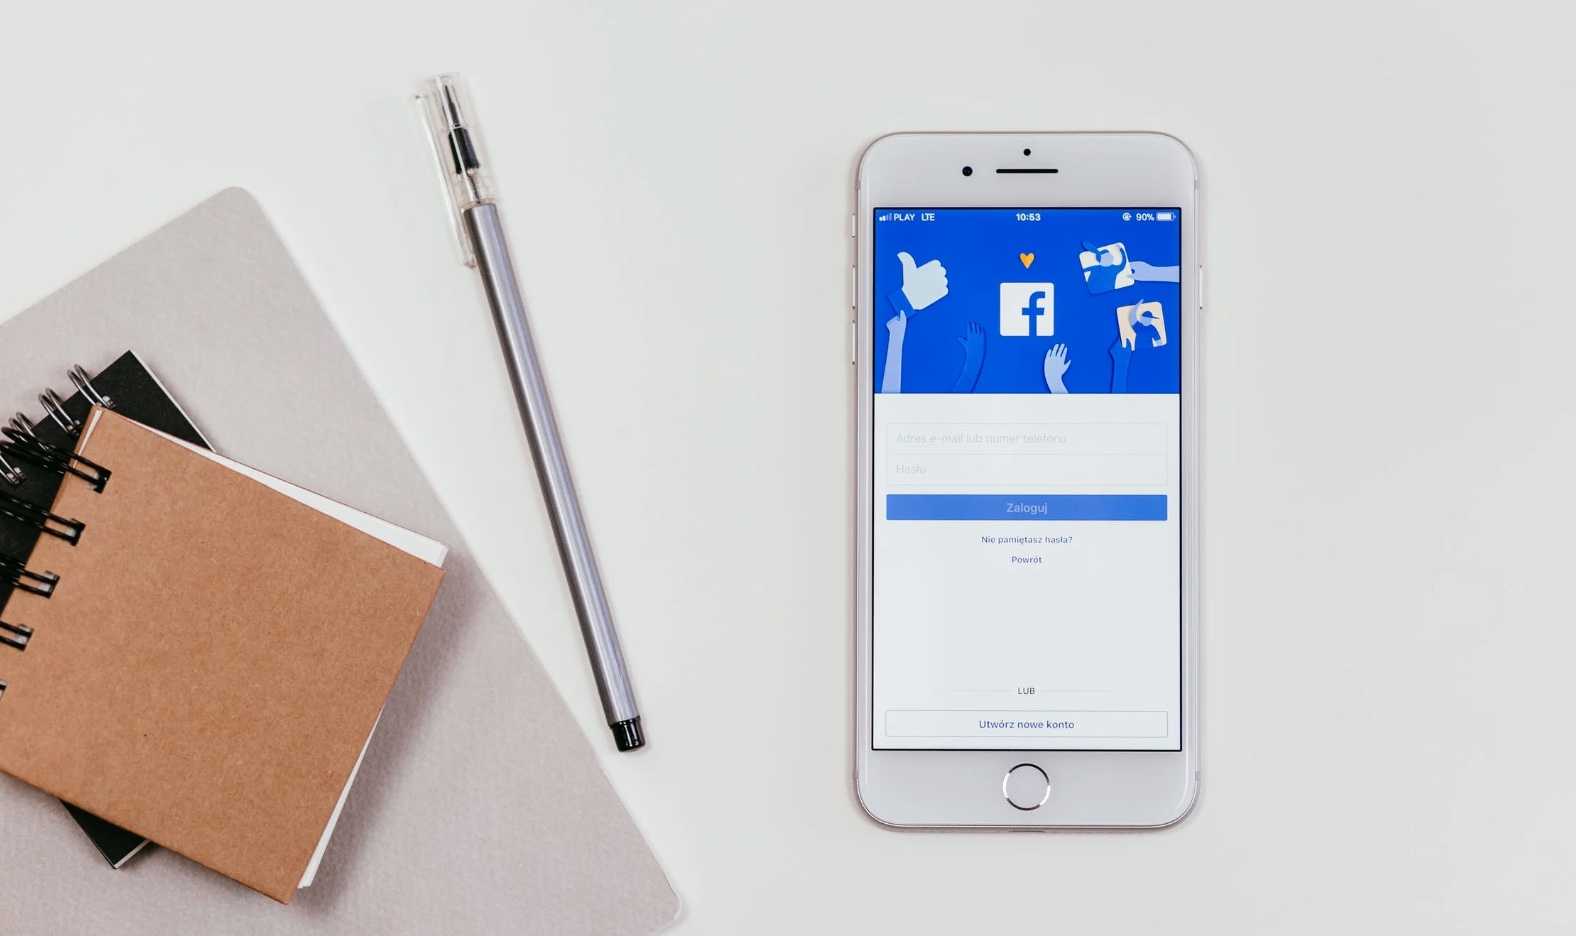 Facebook permetterà di avere fino a 5 profili personali